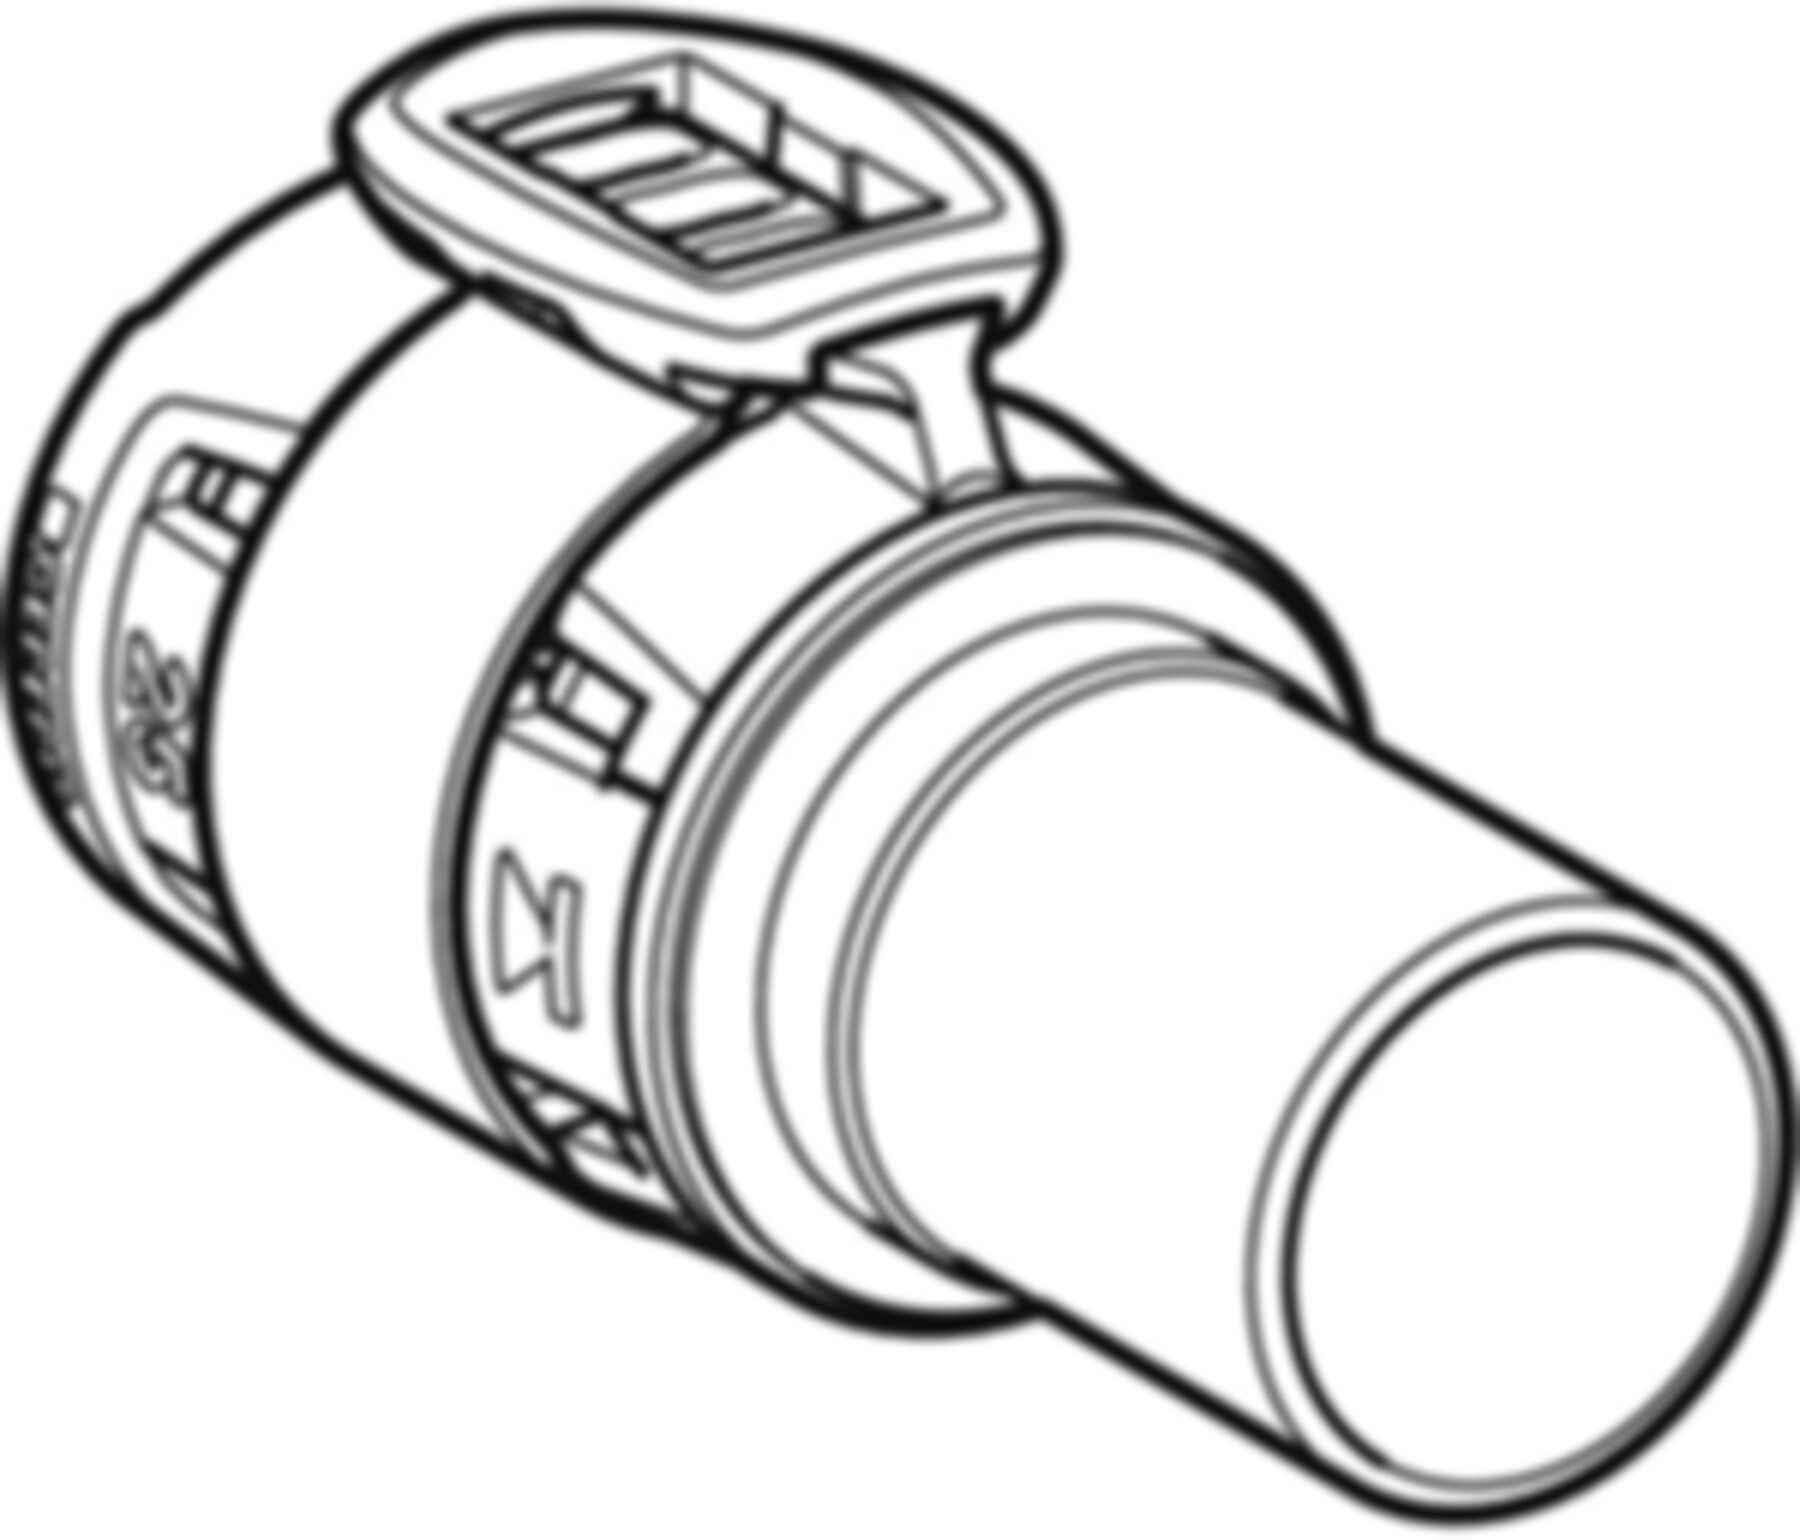 Übergang 32mm-28mm 620.254.00.1 auf Mapress Steckende Edelstahl - Geberit FlowFit-Rohre/Formstücke